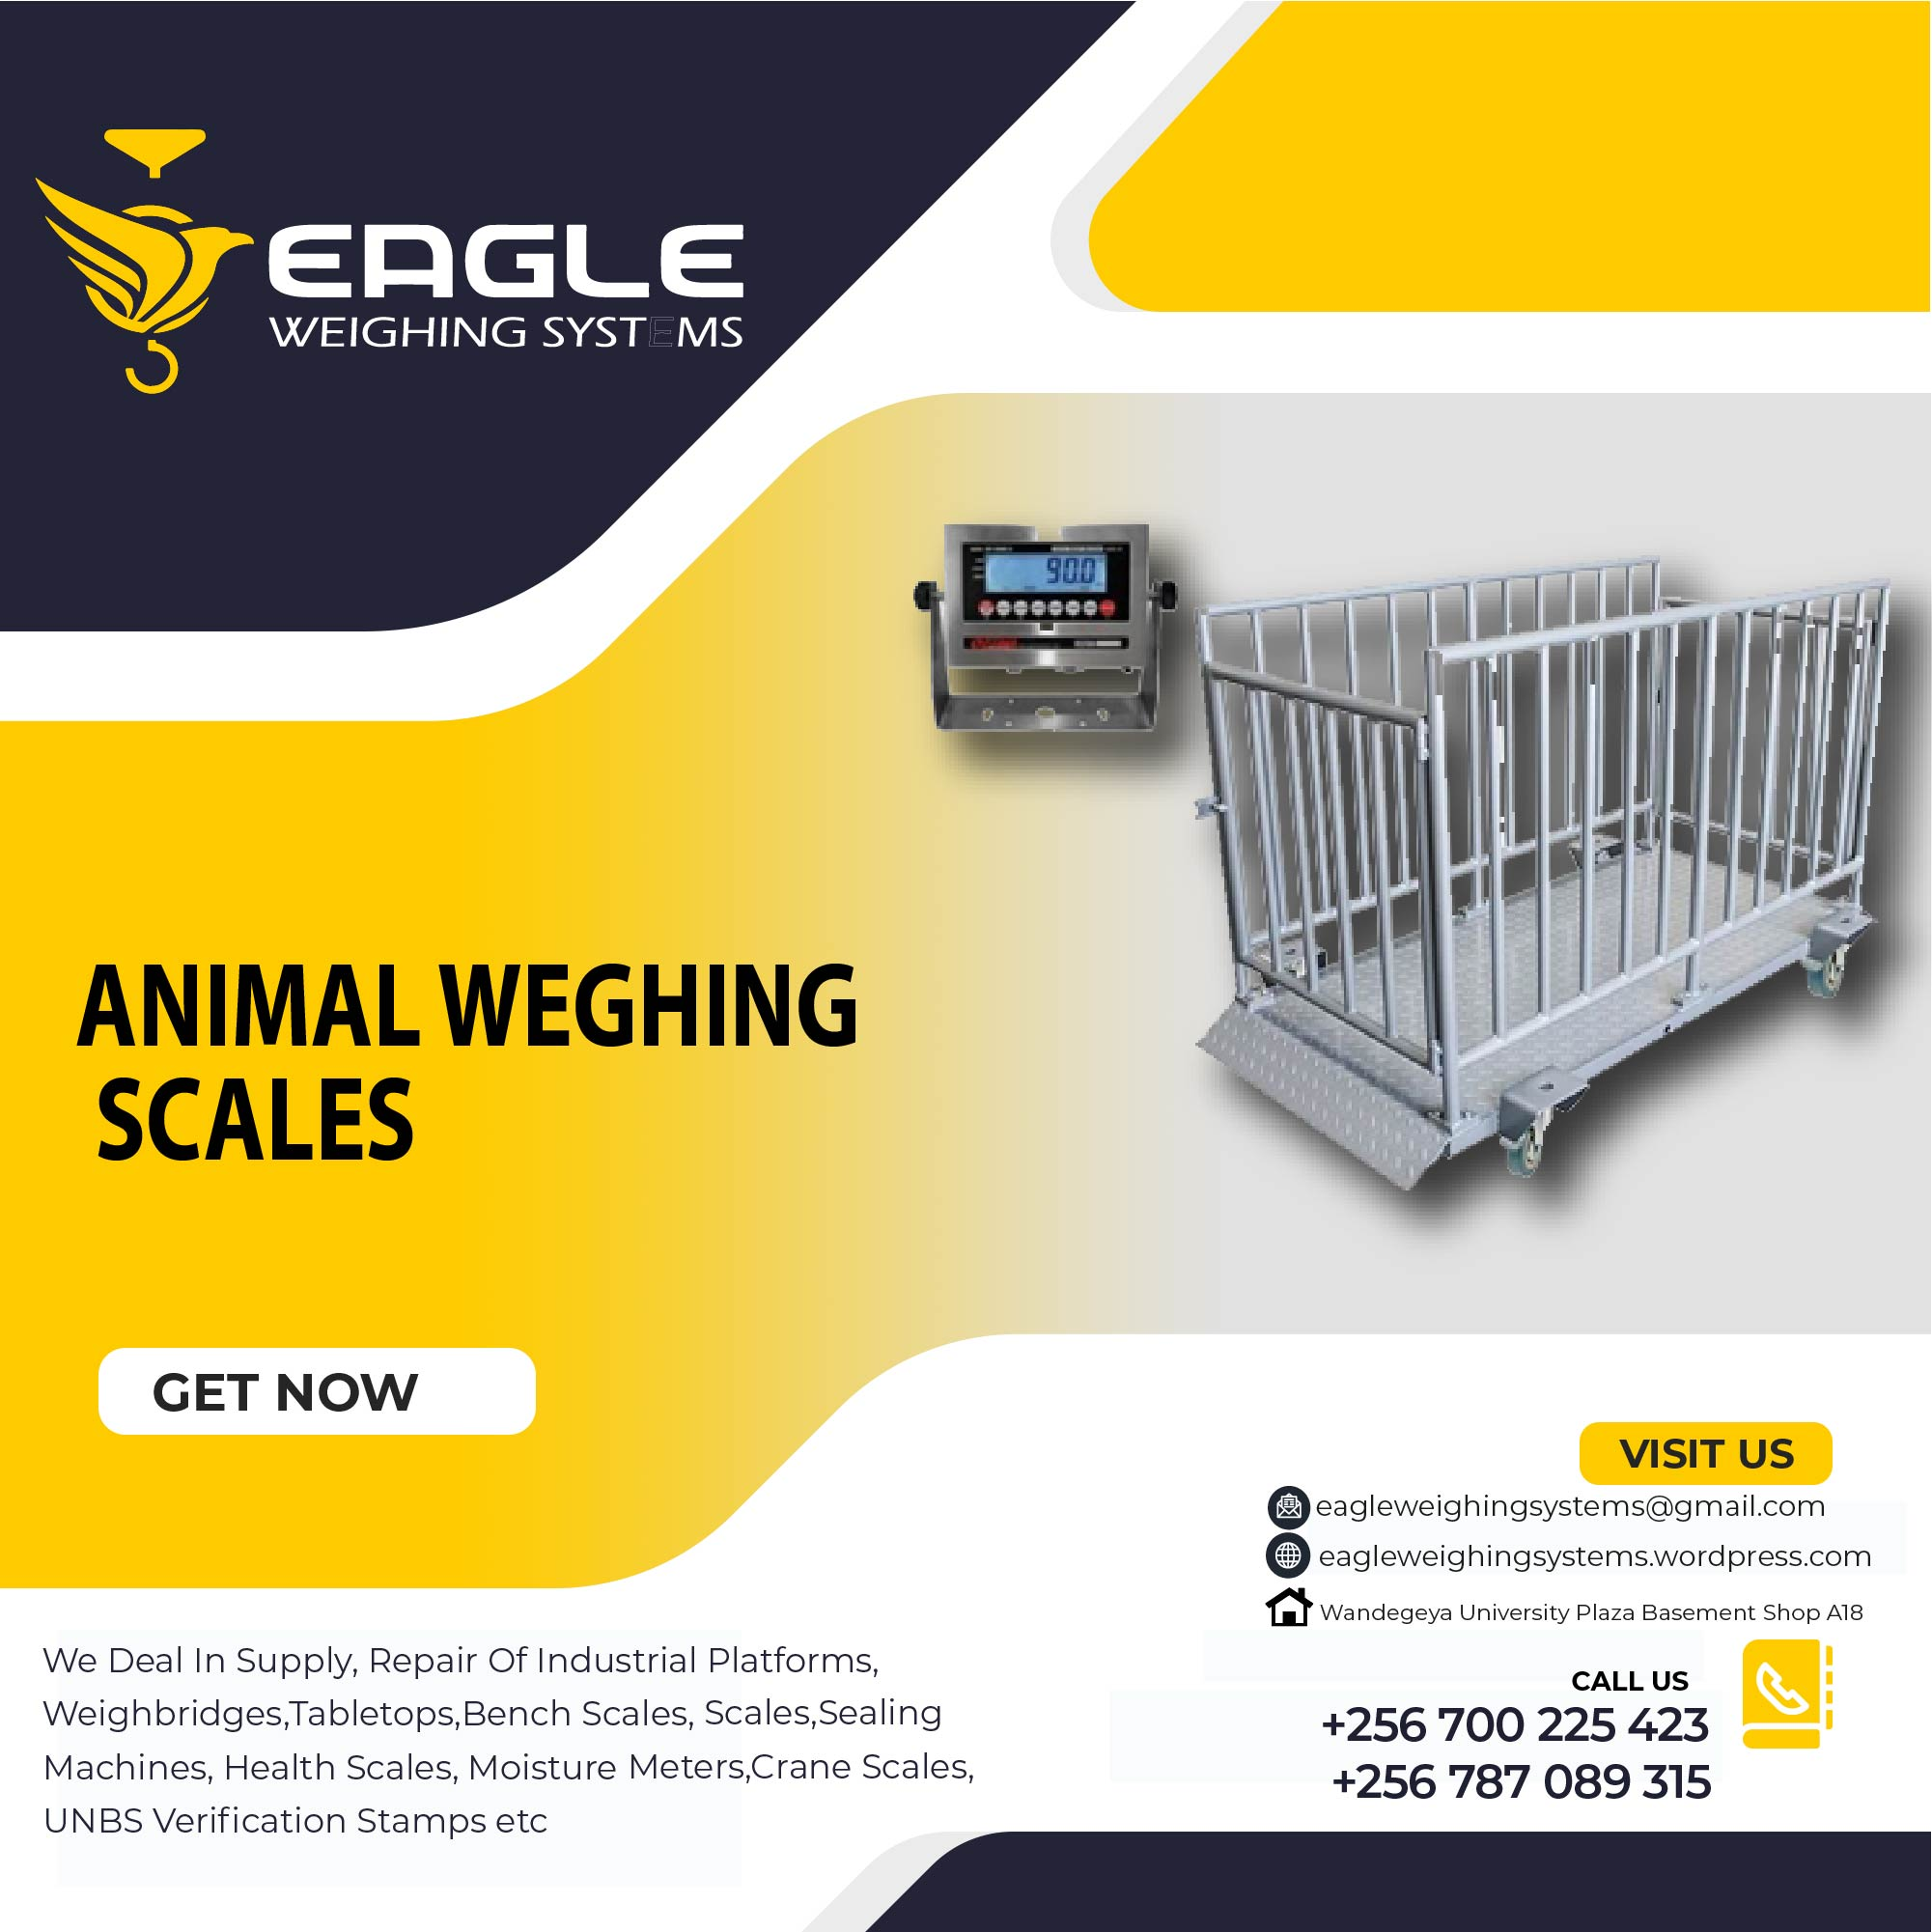 Digital platform animal weighing scales in Kampala Uganda'